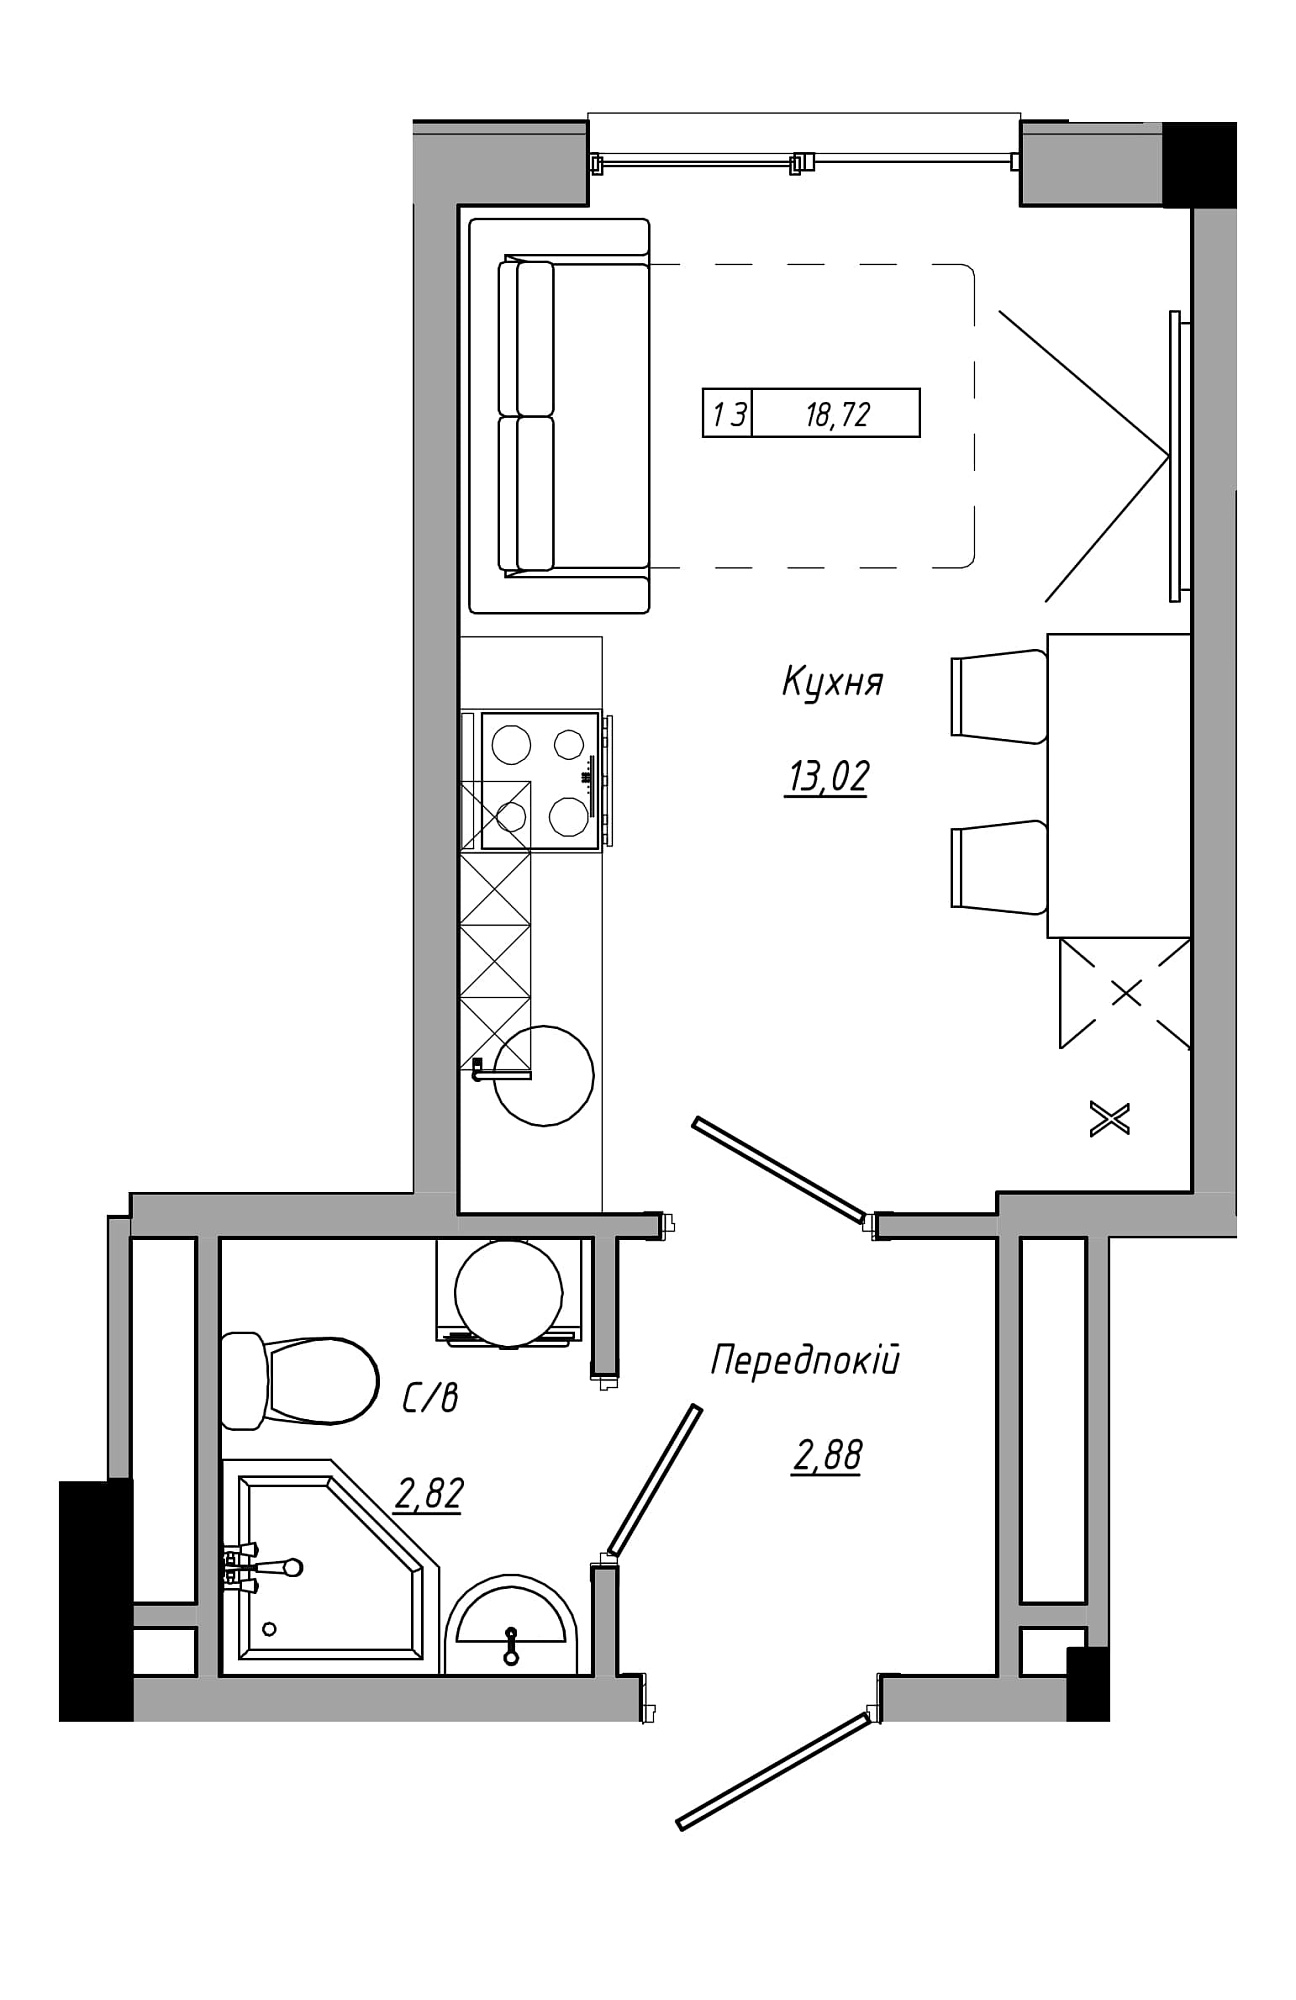 Планування Smart-квартира площею 18.72м2, AB-21-11/00011.